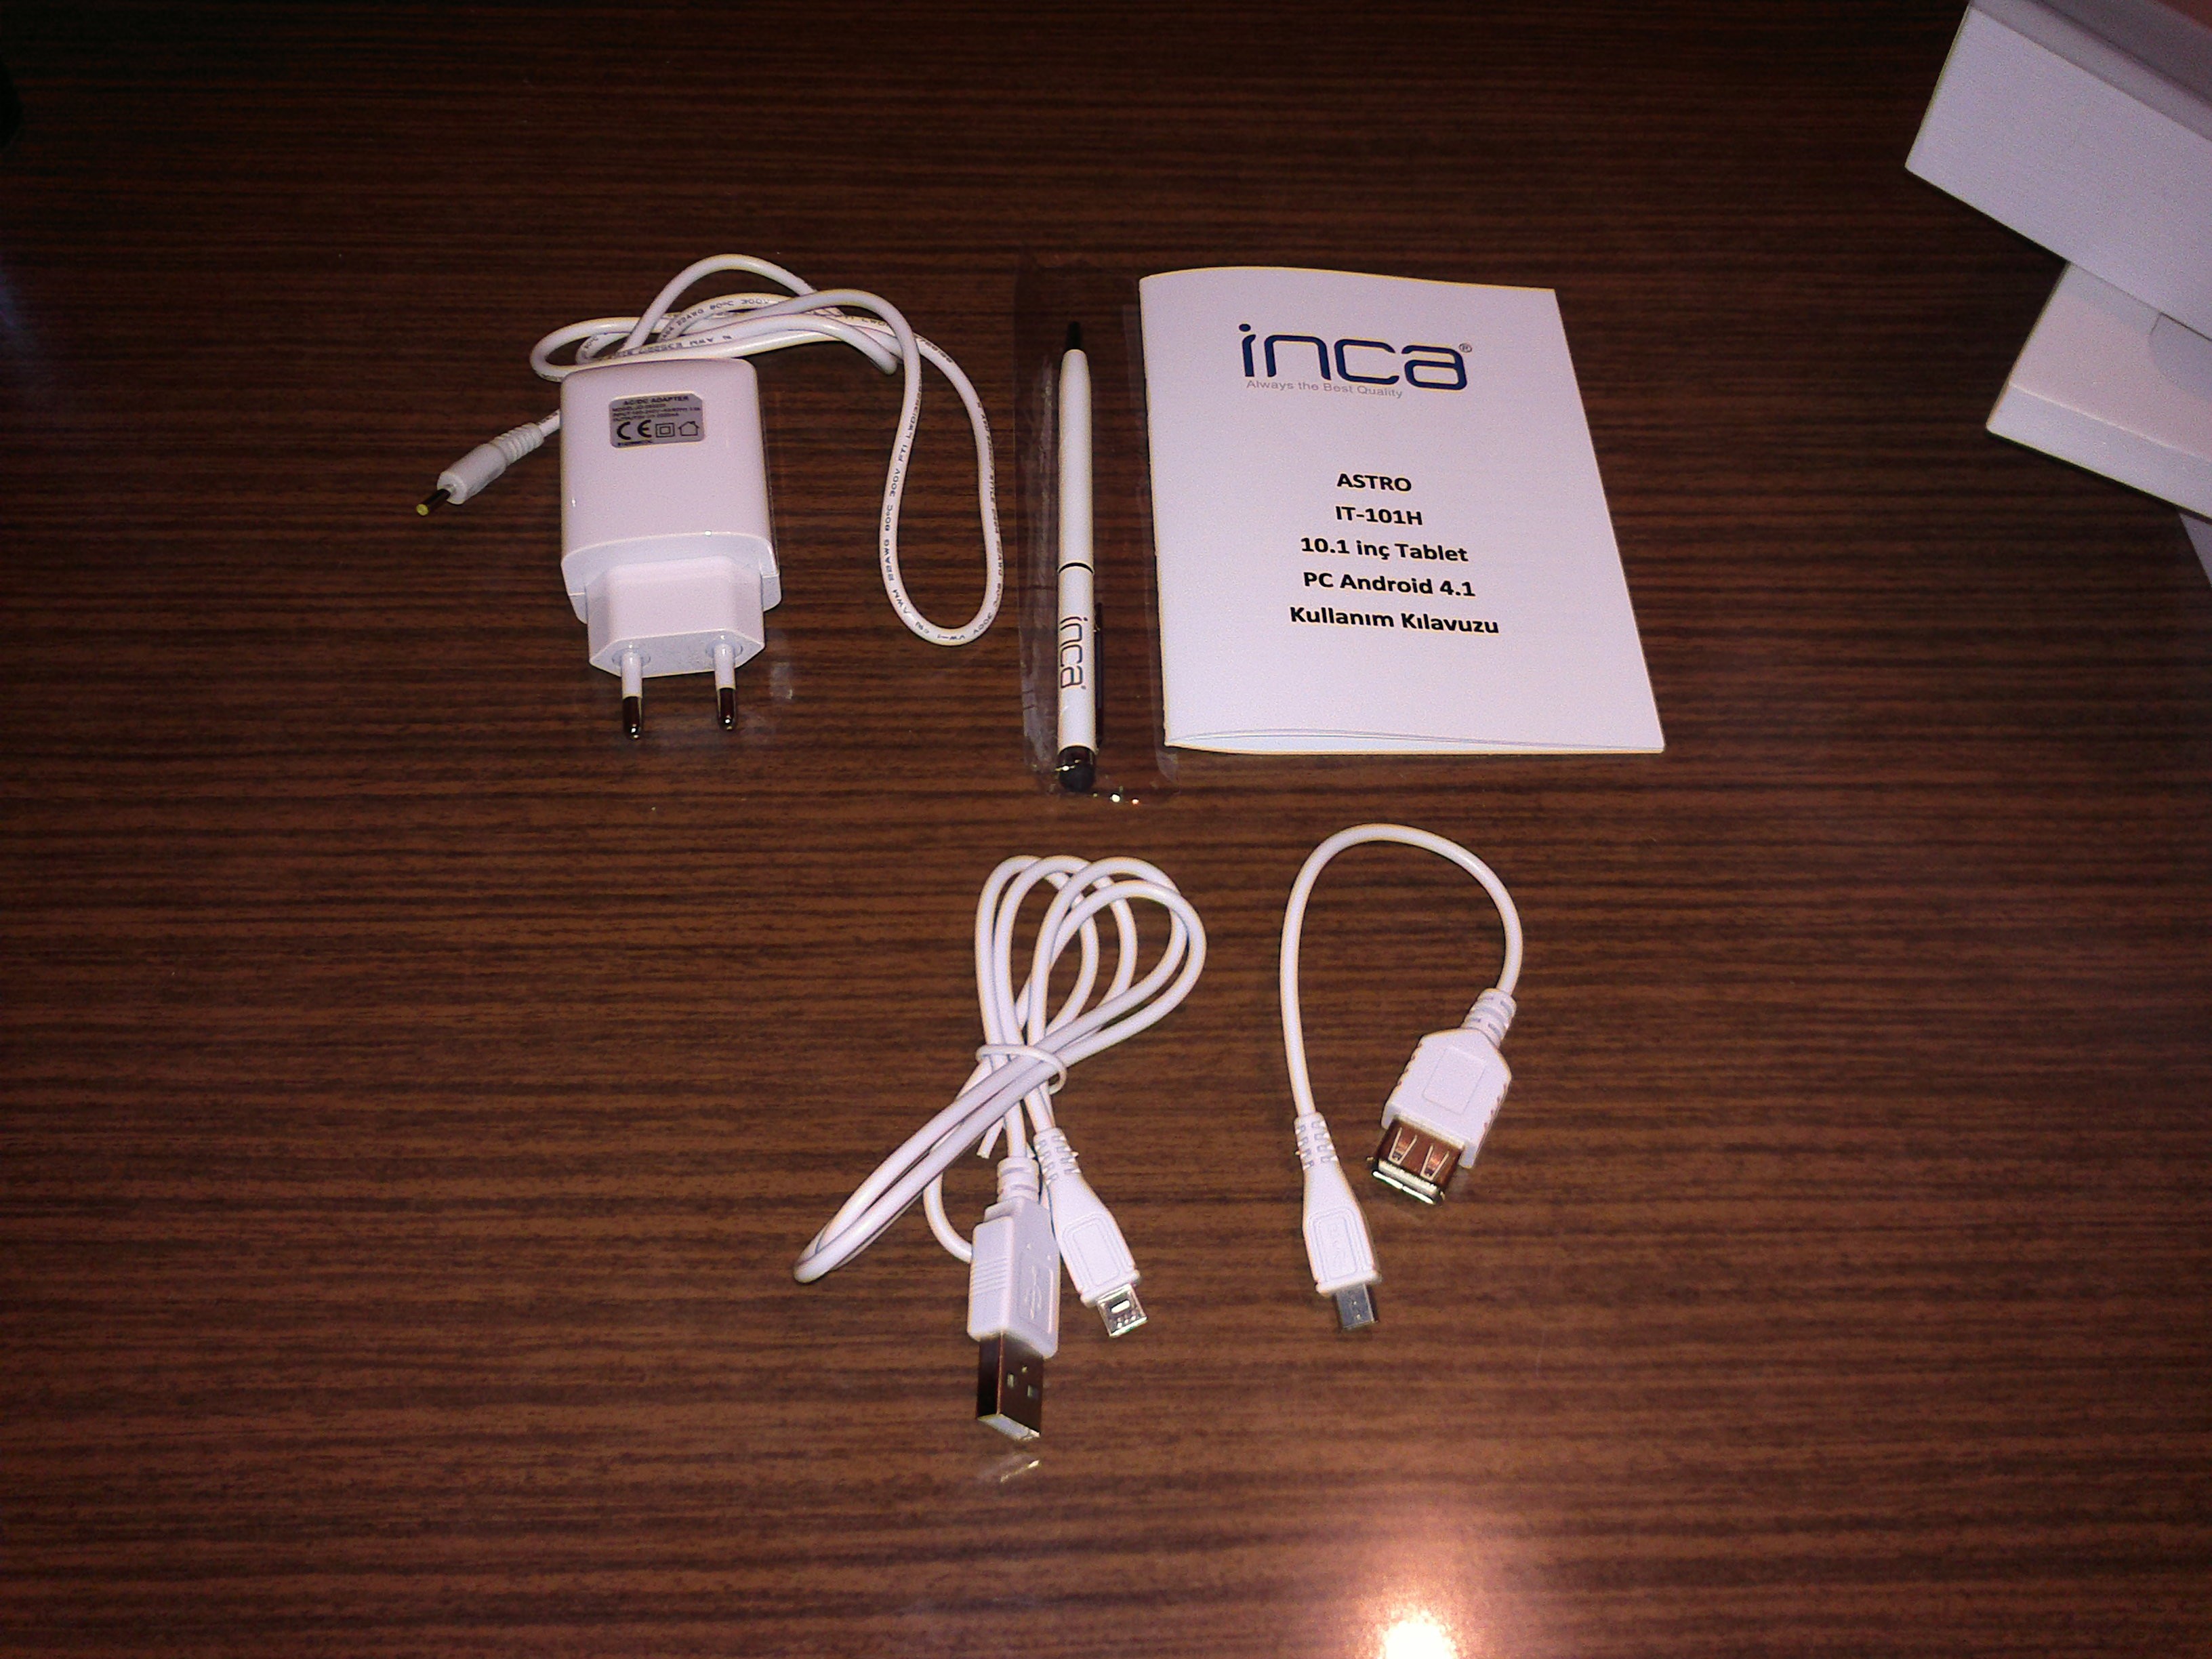  ''INCA ASTRO 10.1' RK3066 IPS TABLET'' İncelemesi (20.04.2013 Konu Güncellendi) Root Yöntemi eklendi